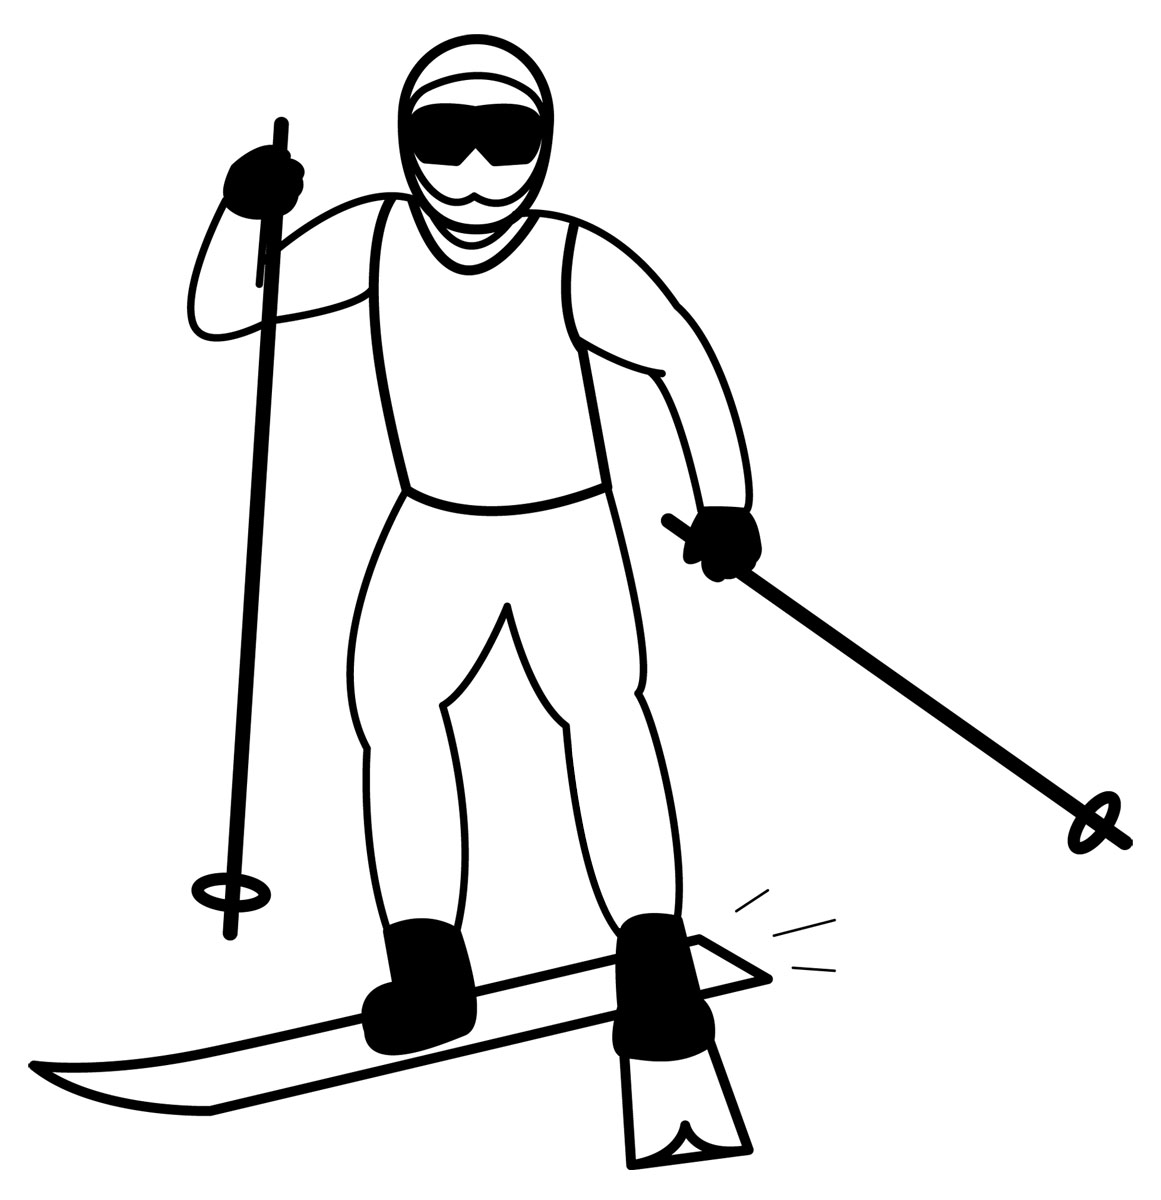 Ski clipart black and white